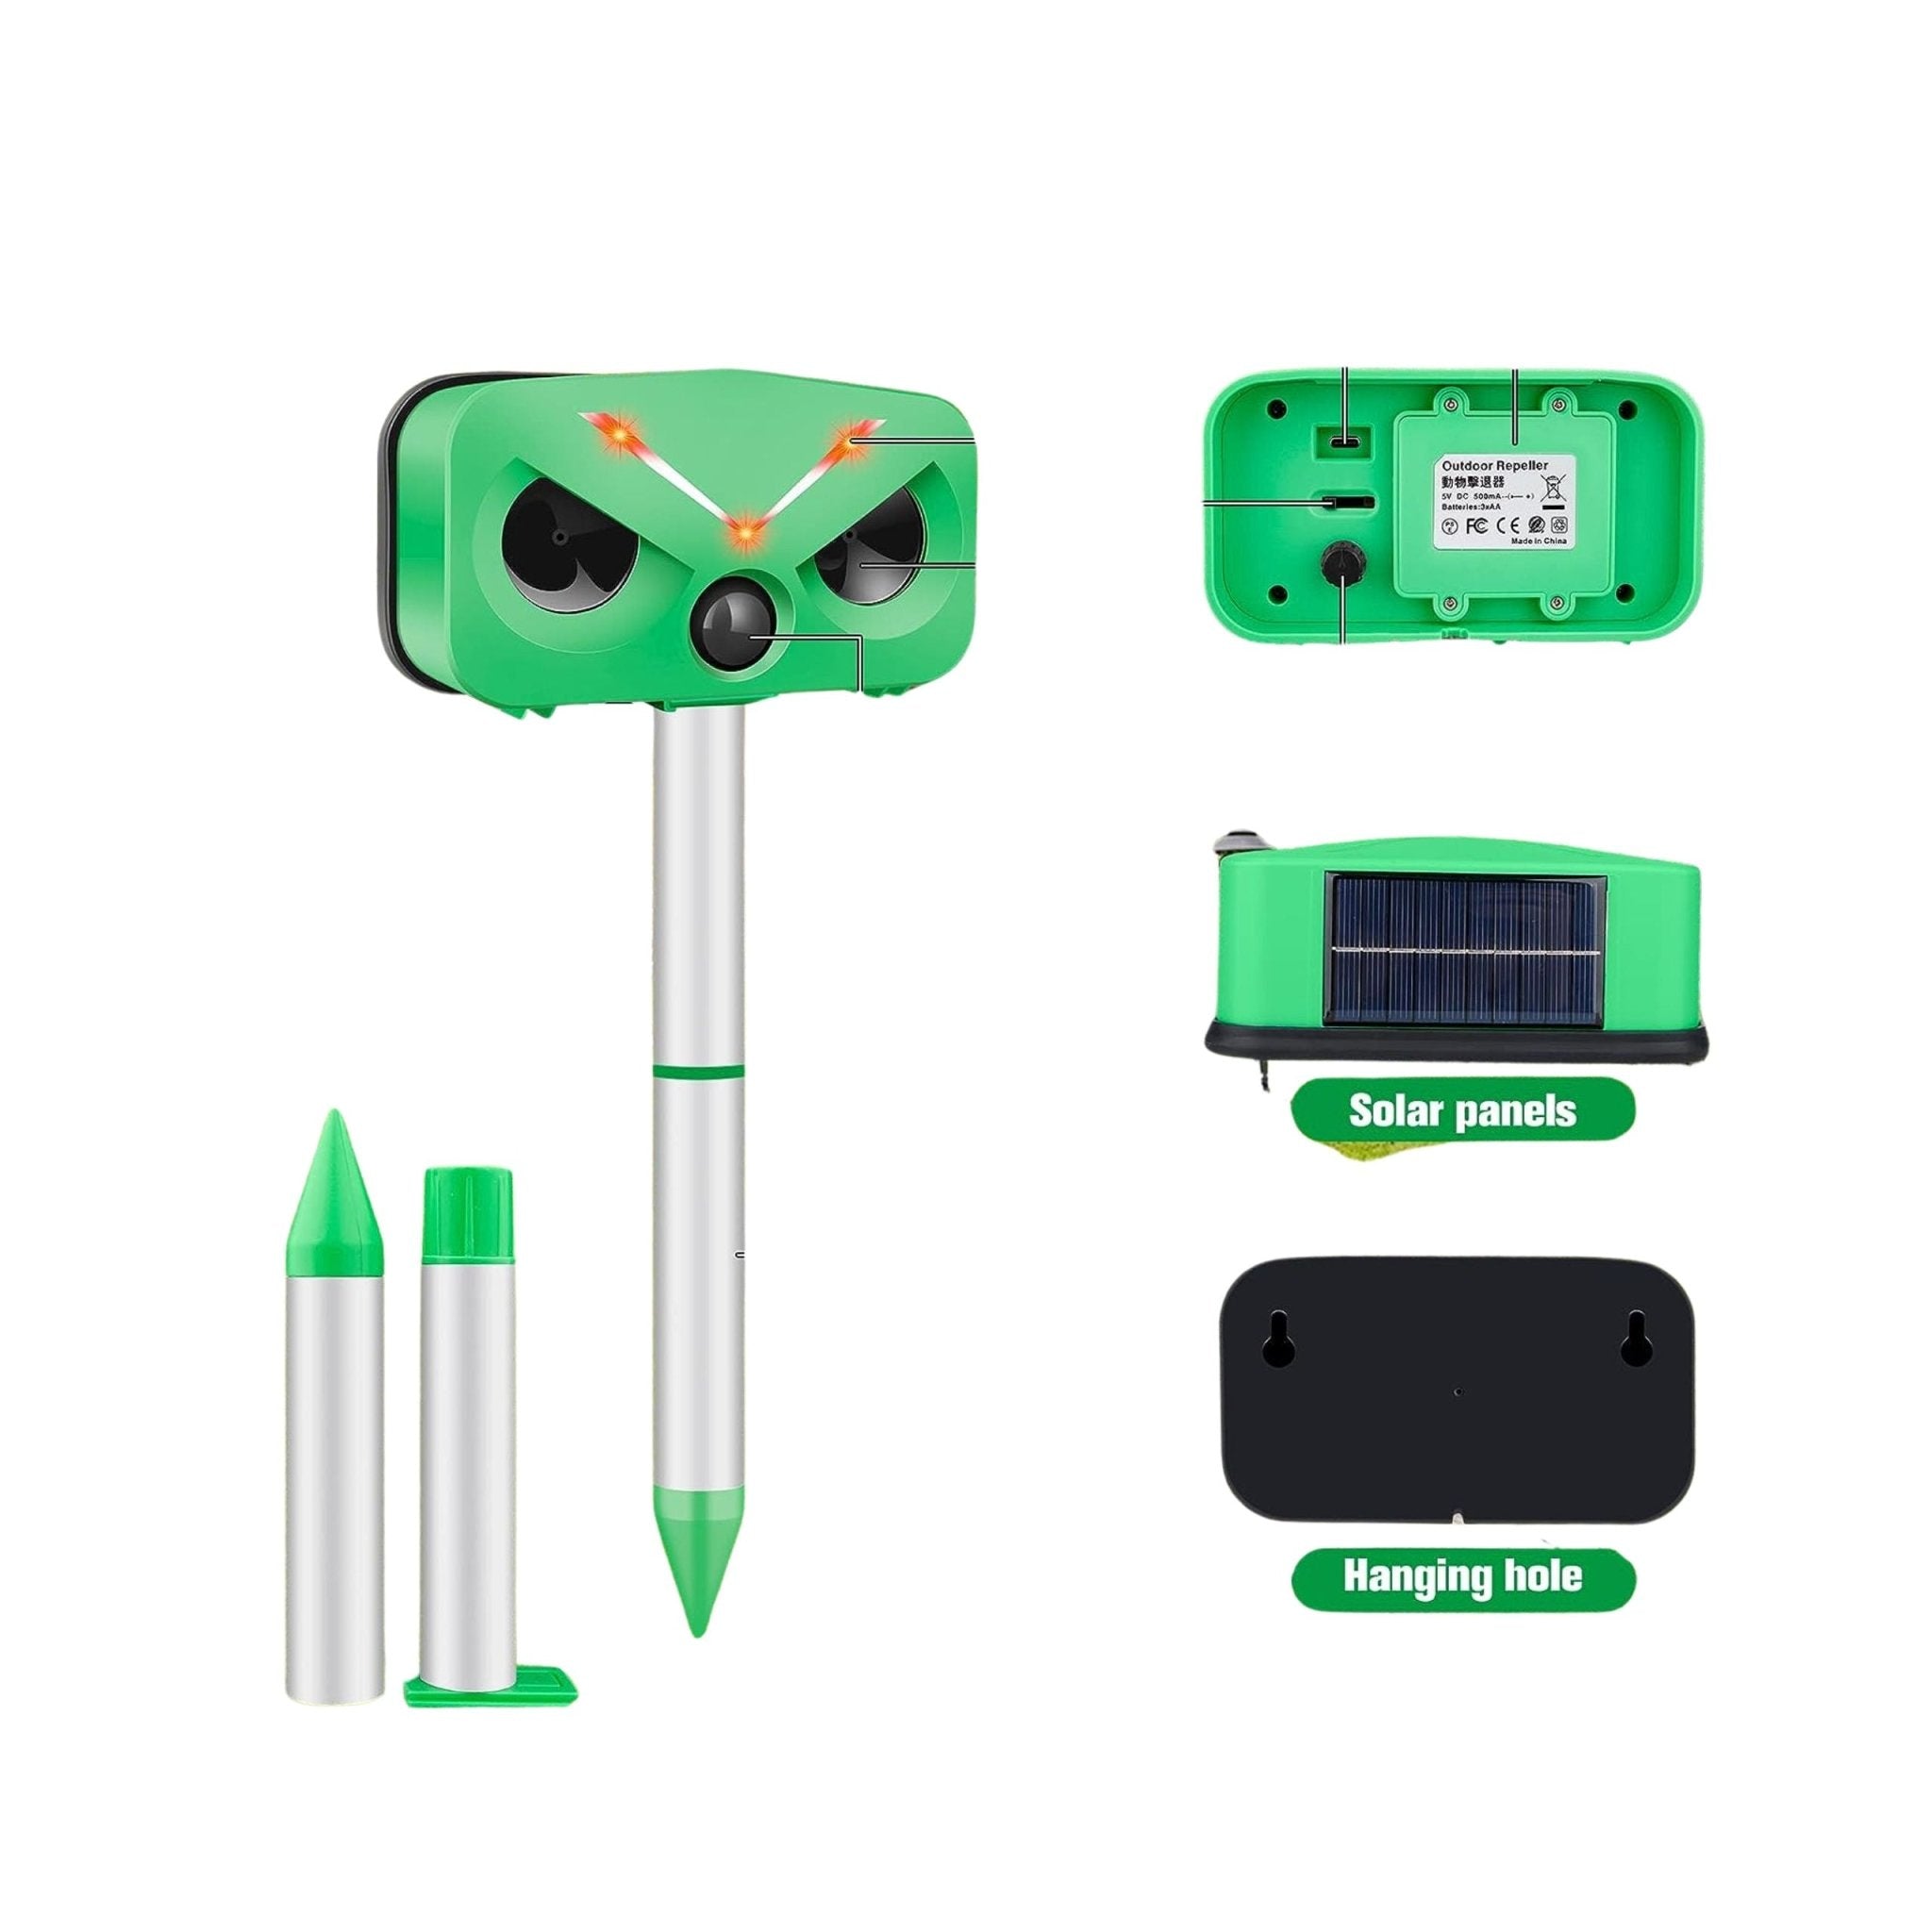 Outdoor Solar Ultrasonic Animal Repeller - Green